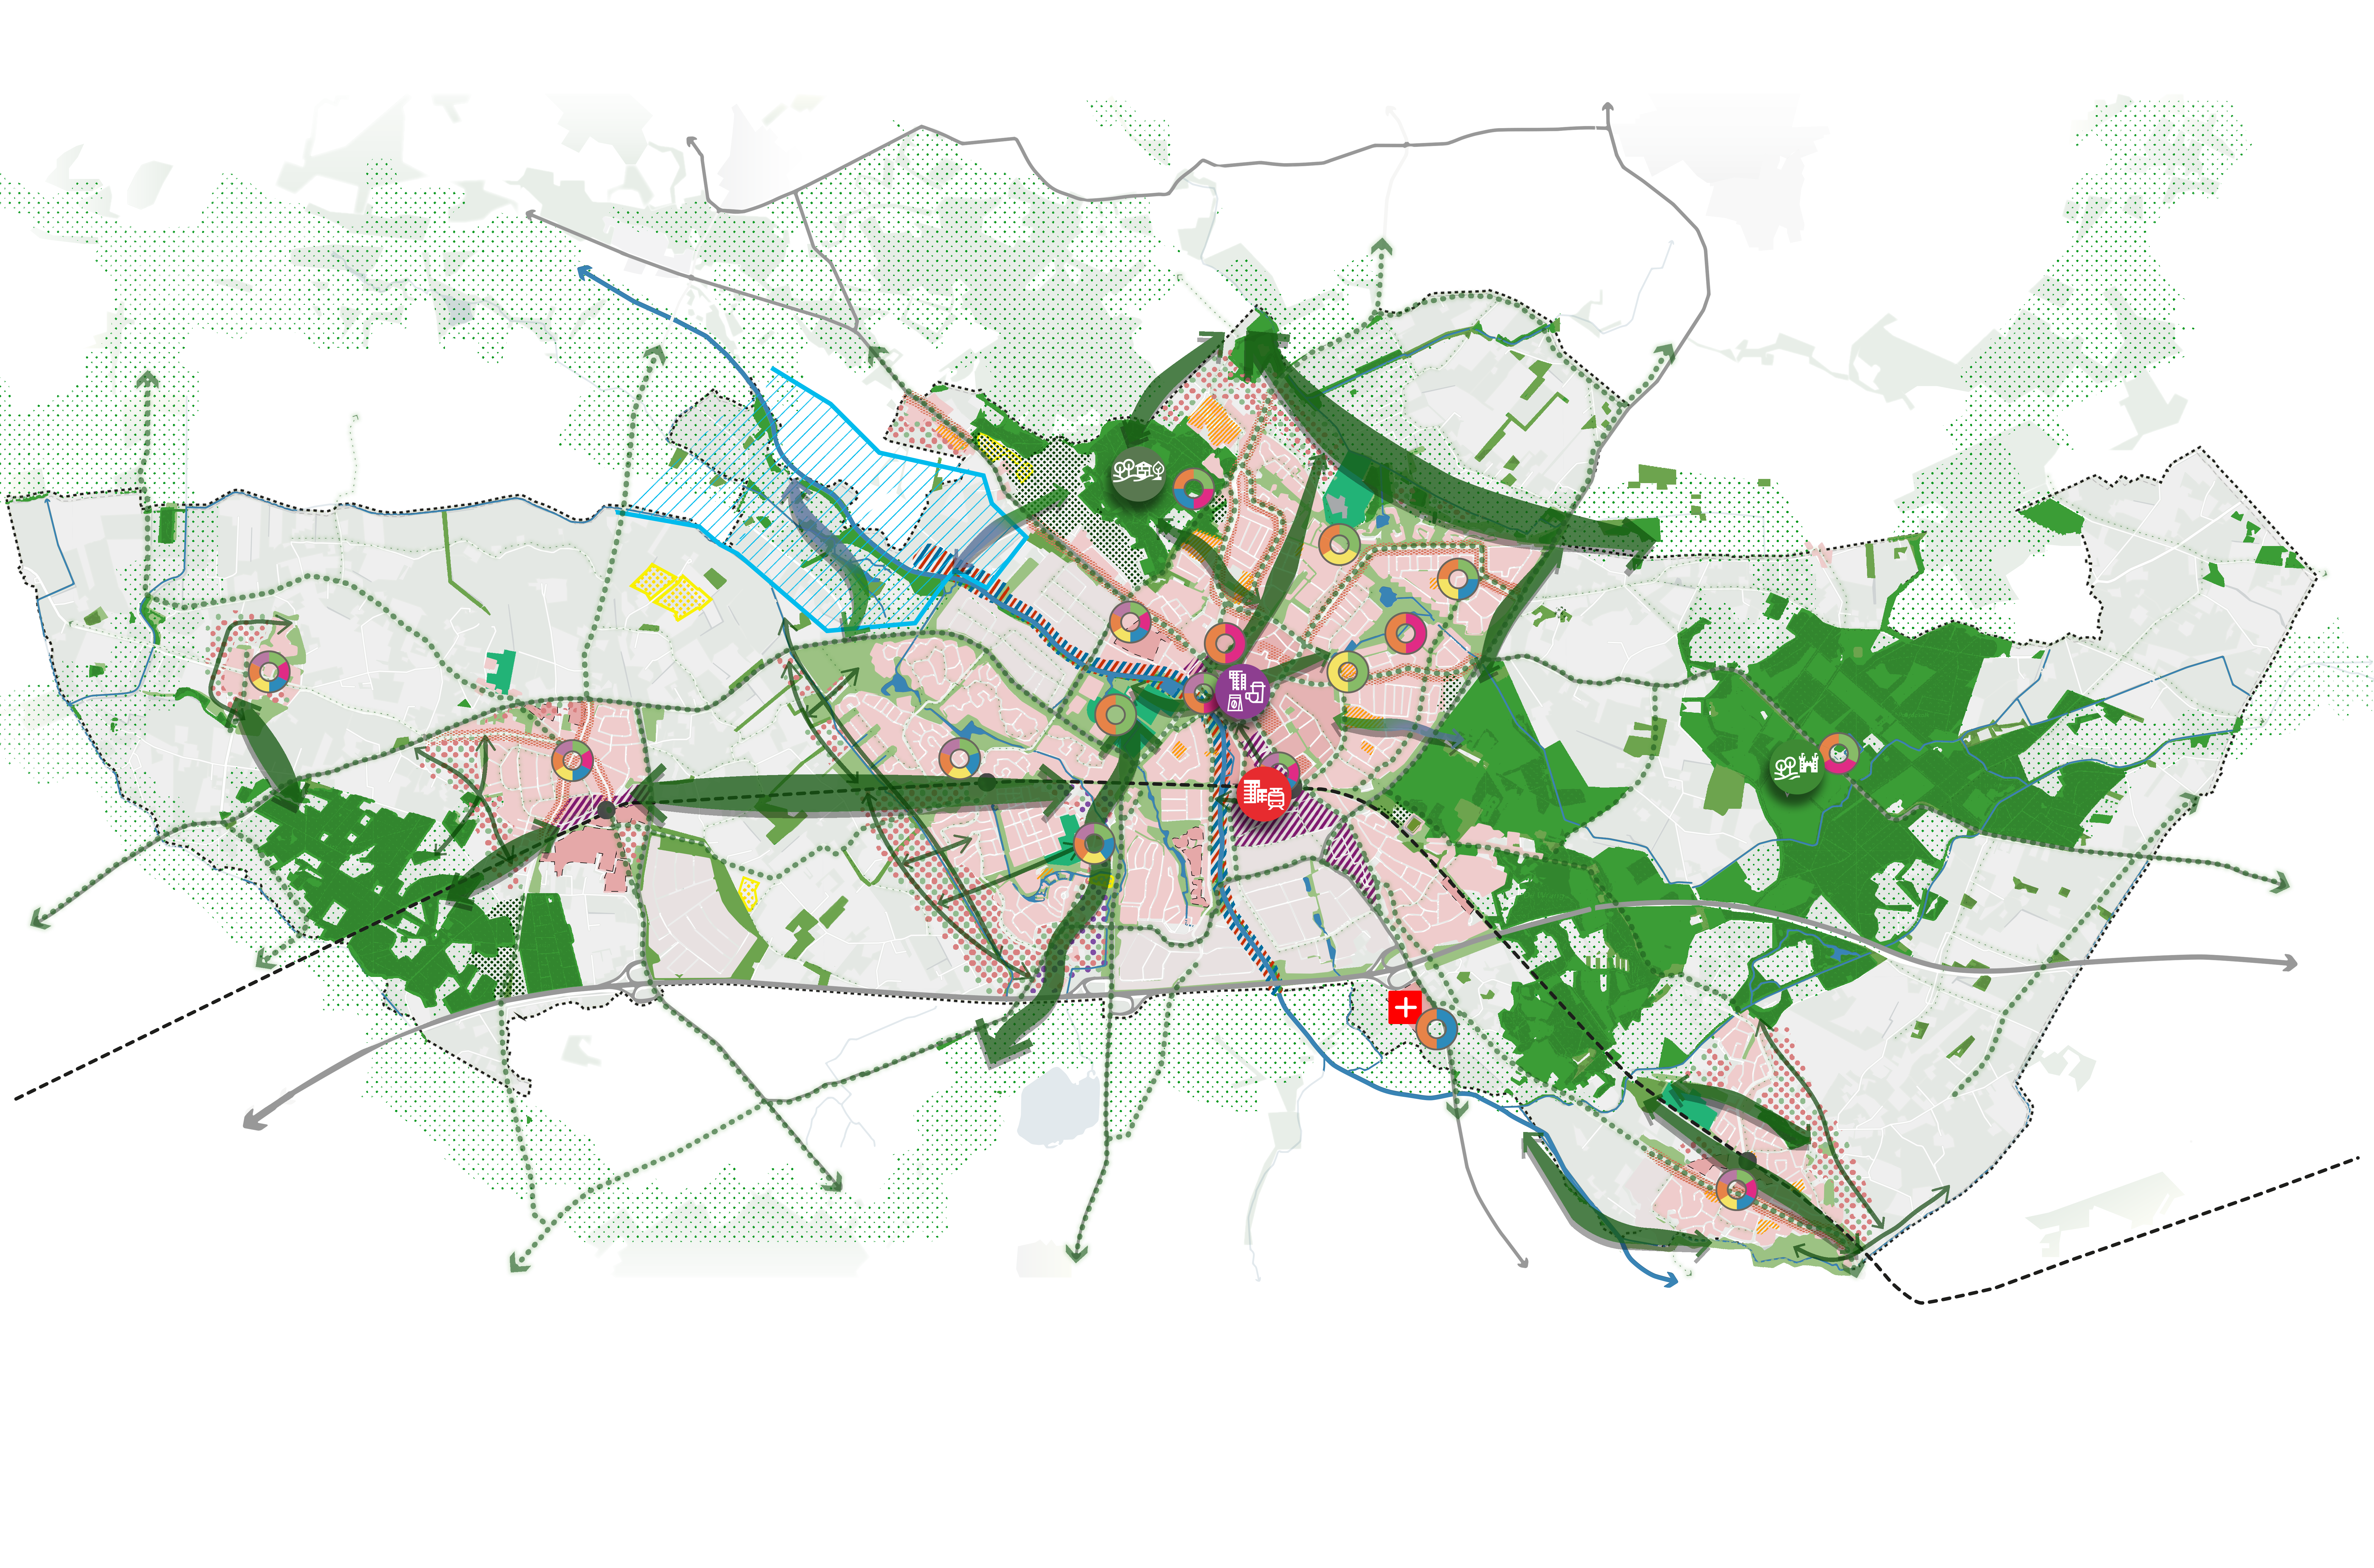 Kaart van gemeente Doetinchem met daarin de verschillende ambities in getekend